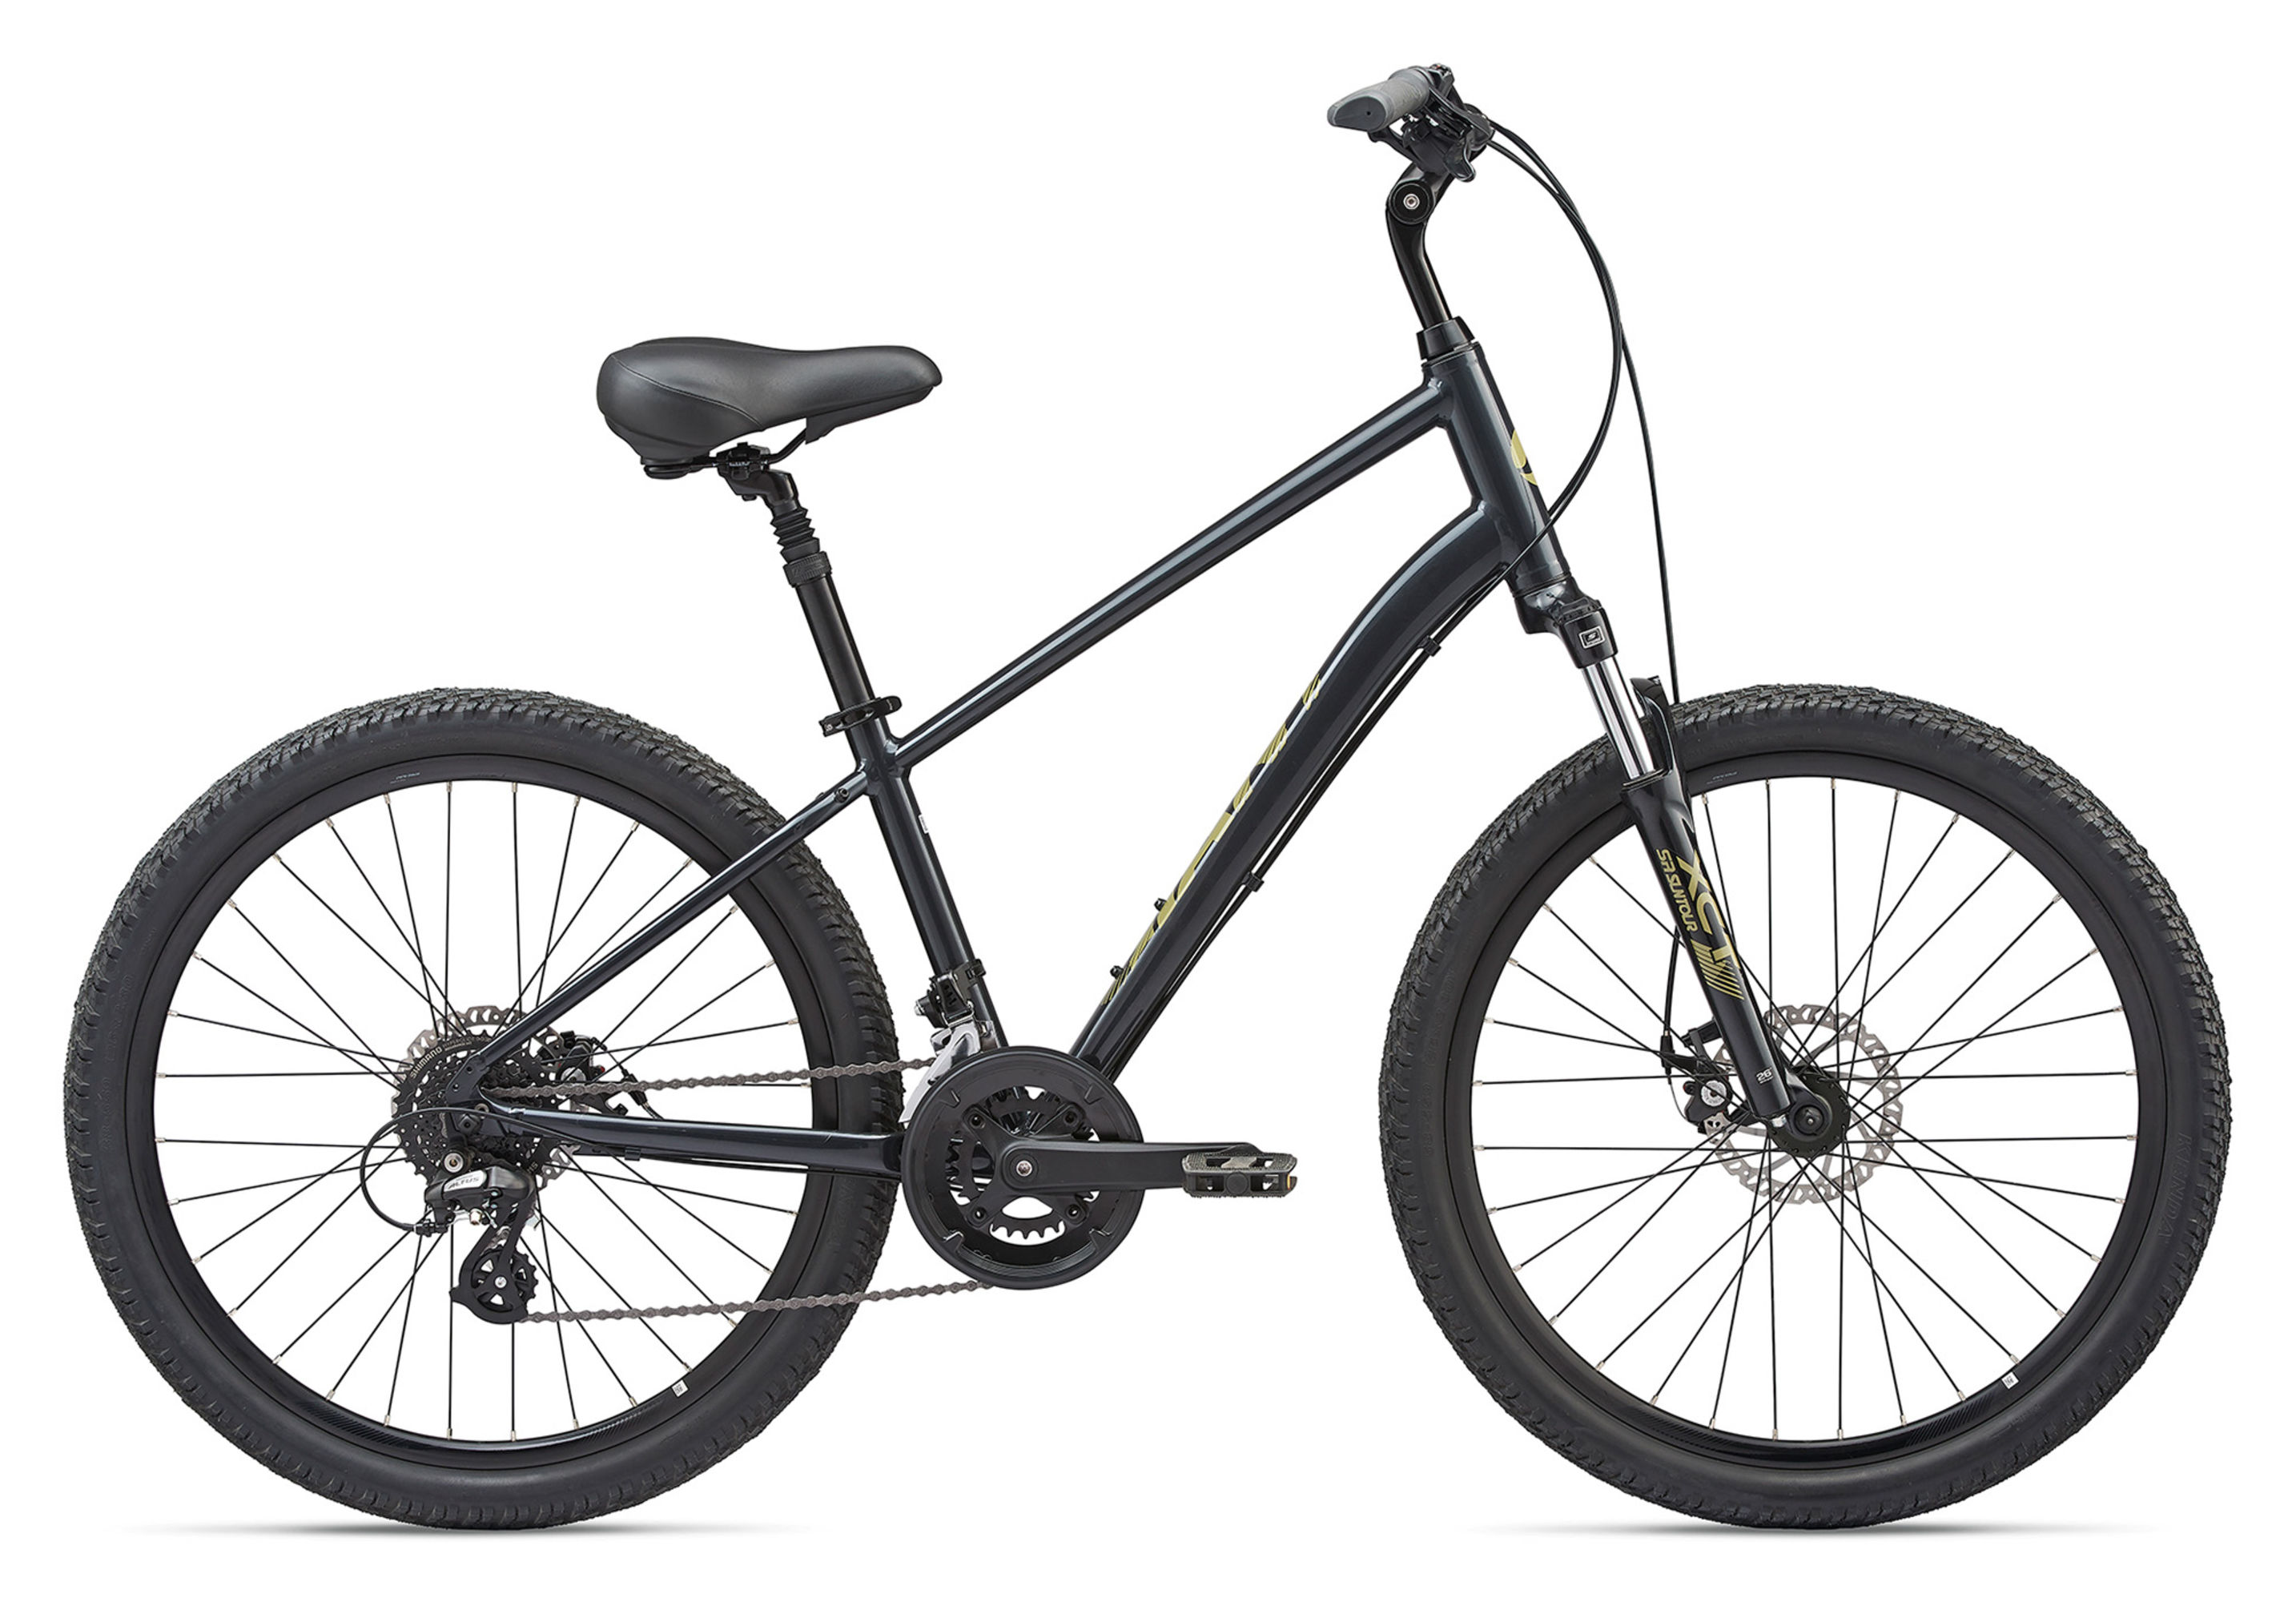  Отзывы о Городском велосипеде Giant Sedona DX 2020